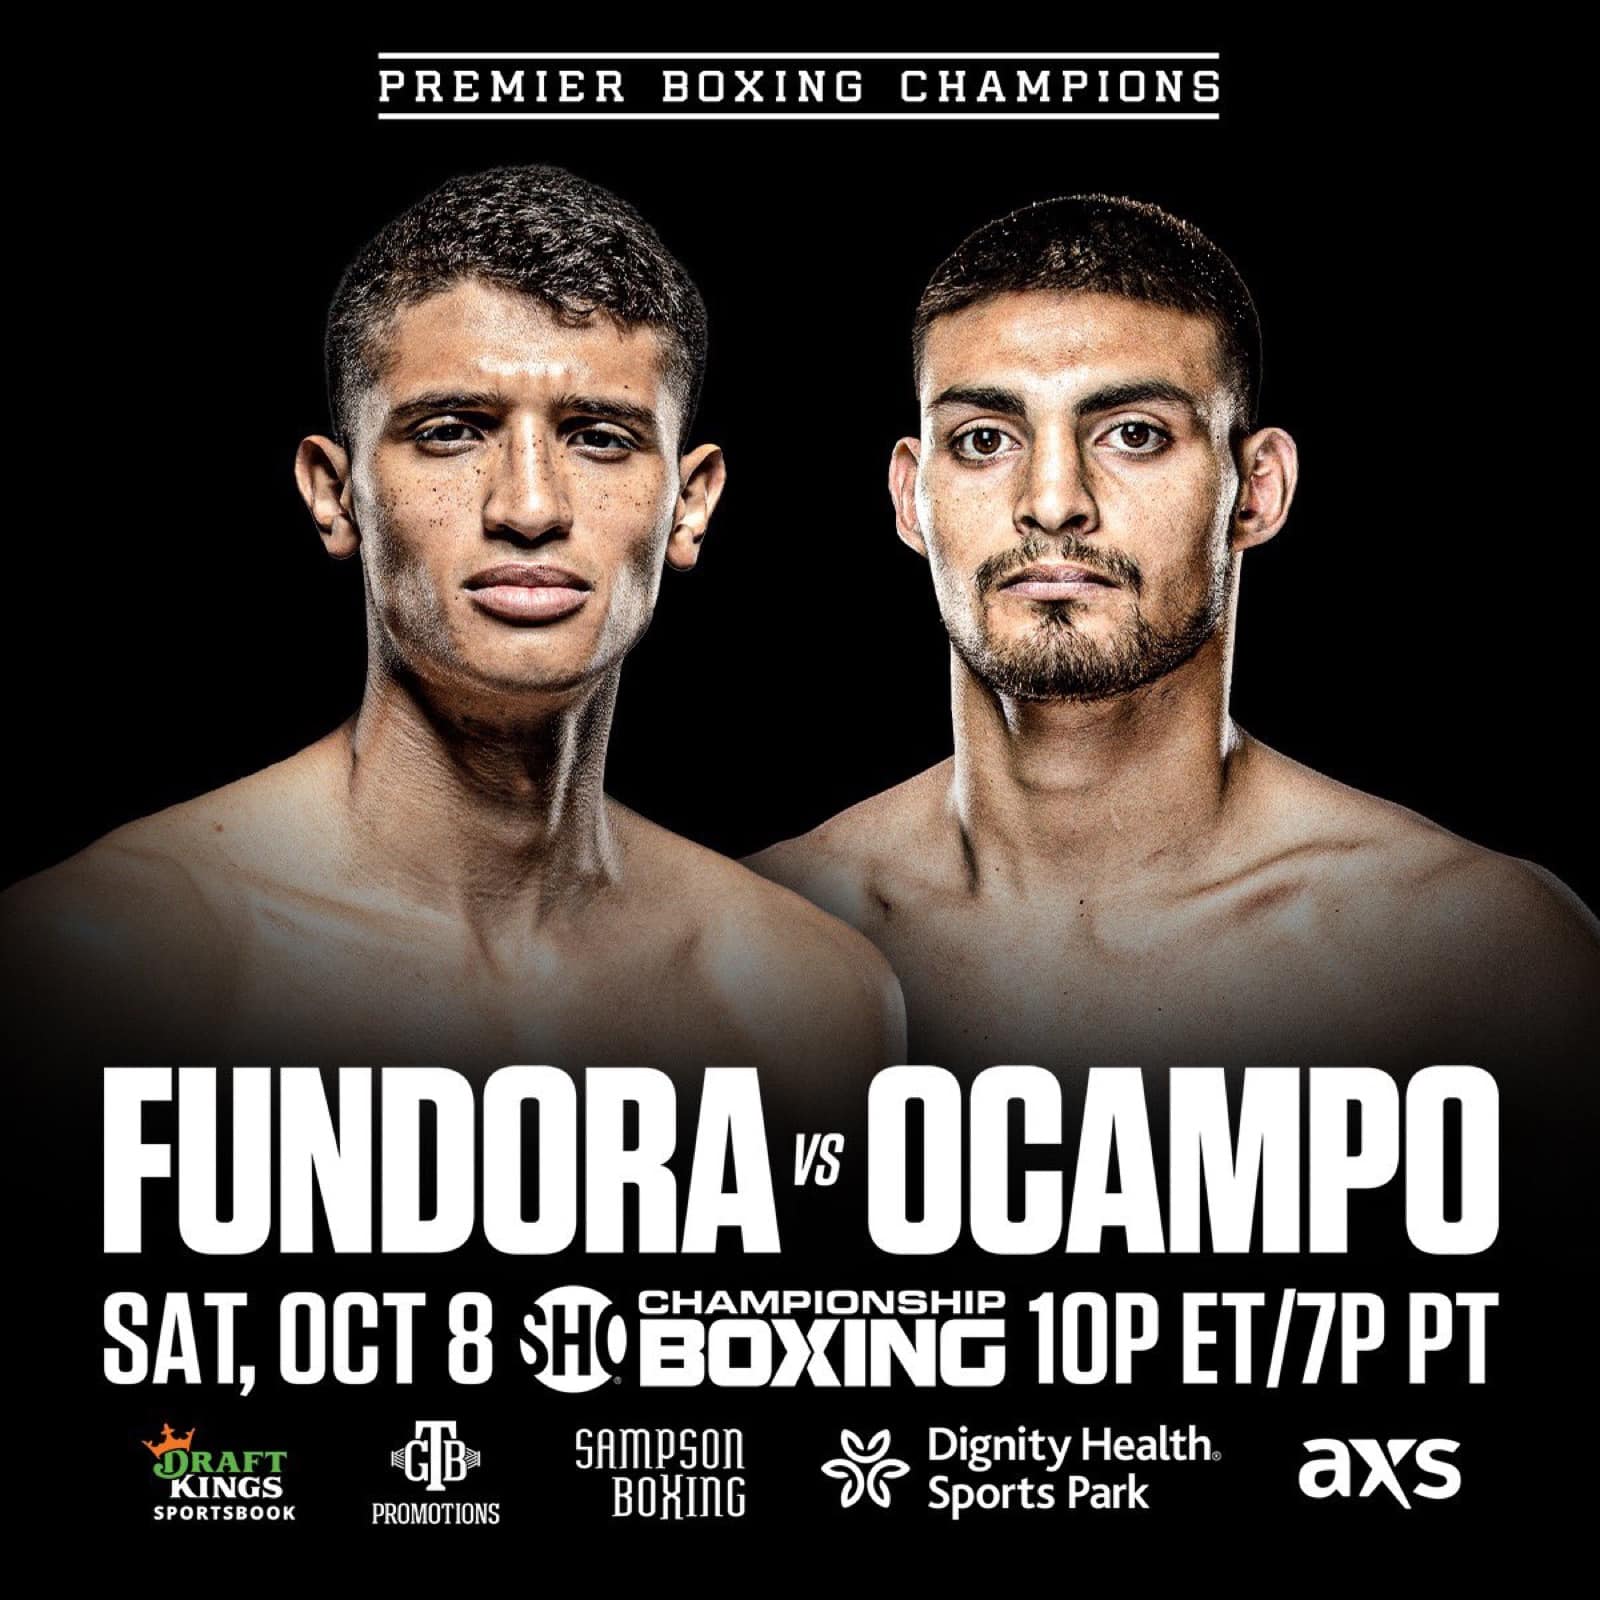 Fundora vs Ocampo - Showtime - Oct. 8 - 10 pm ET